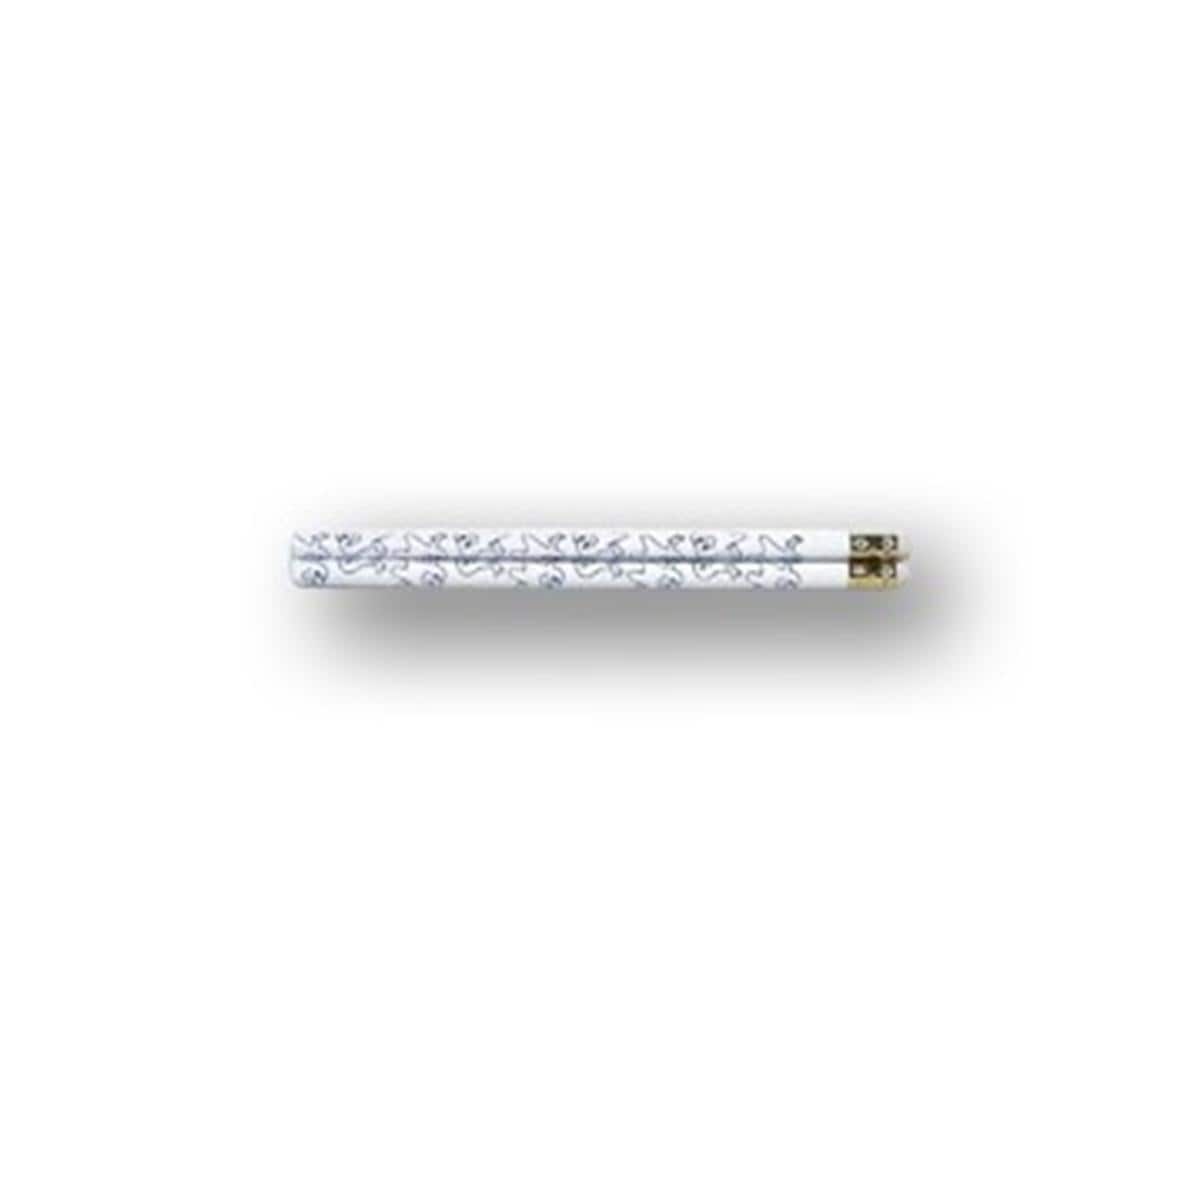 Crayon avec molaire - Crayon avec molaire assortiment, 36 pcs